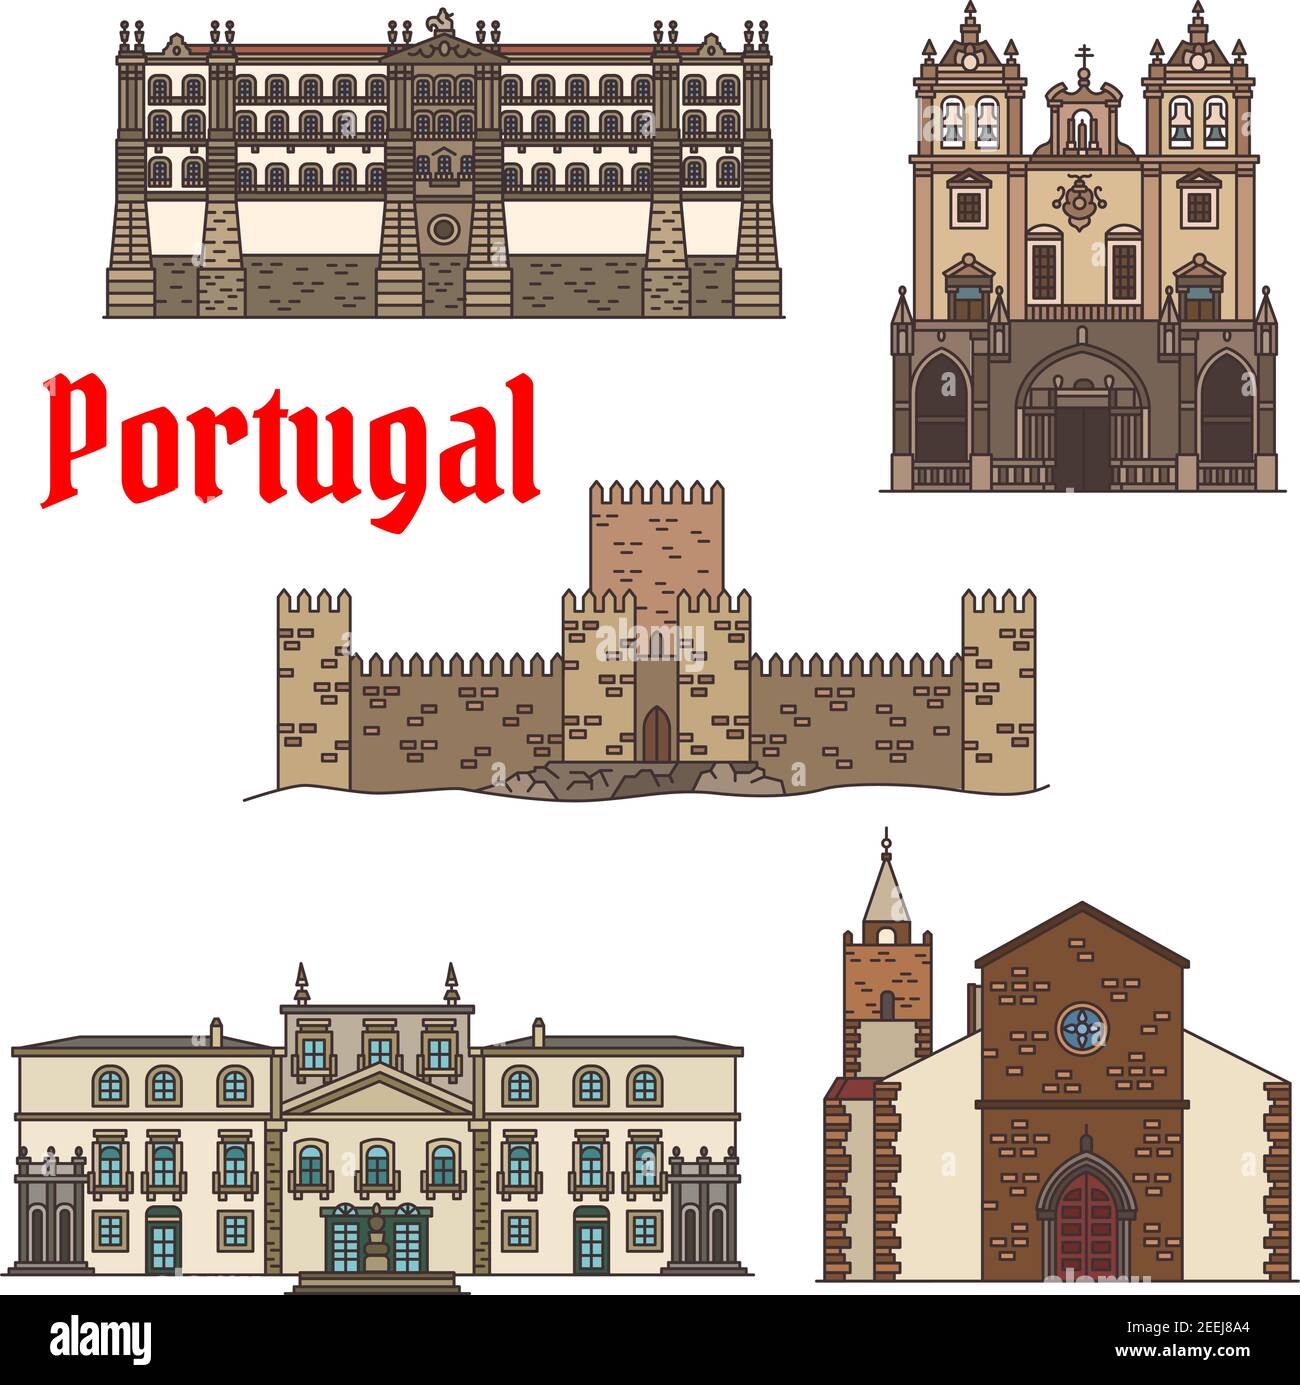 Visite touristique de l'architecture portugaise icône avec le couvent linéaire de Santa Clara, la cathédrale catholique romaine de Funchal, l'ancien château avec tour, Cathed Illustration de Vecteur